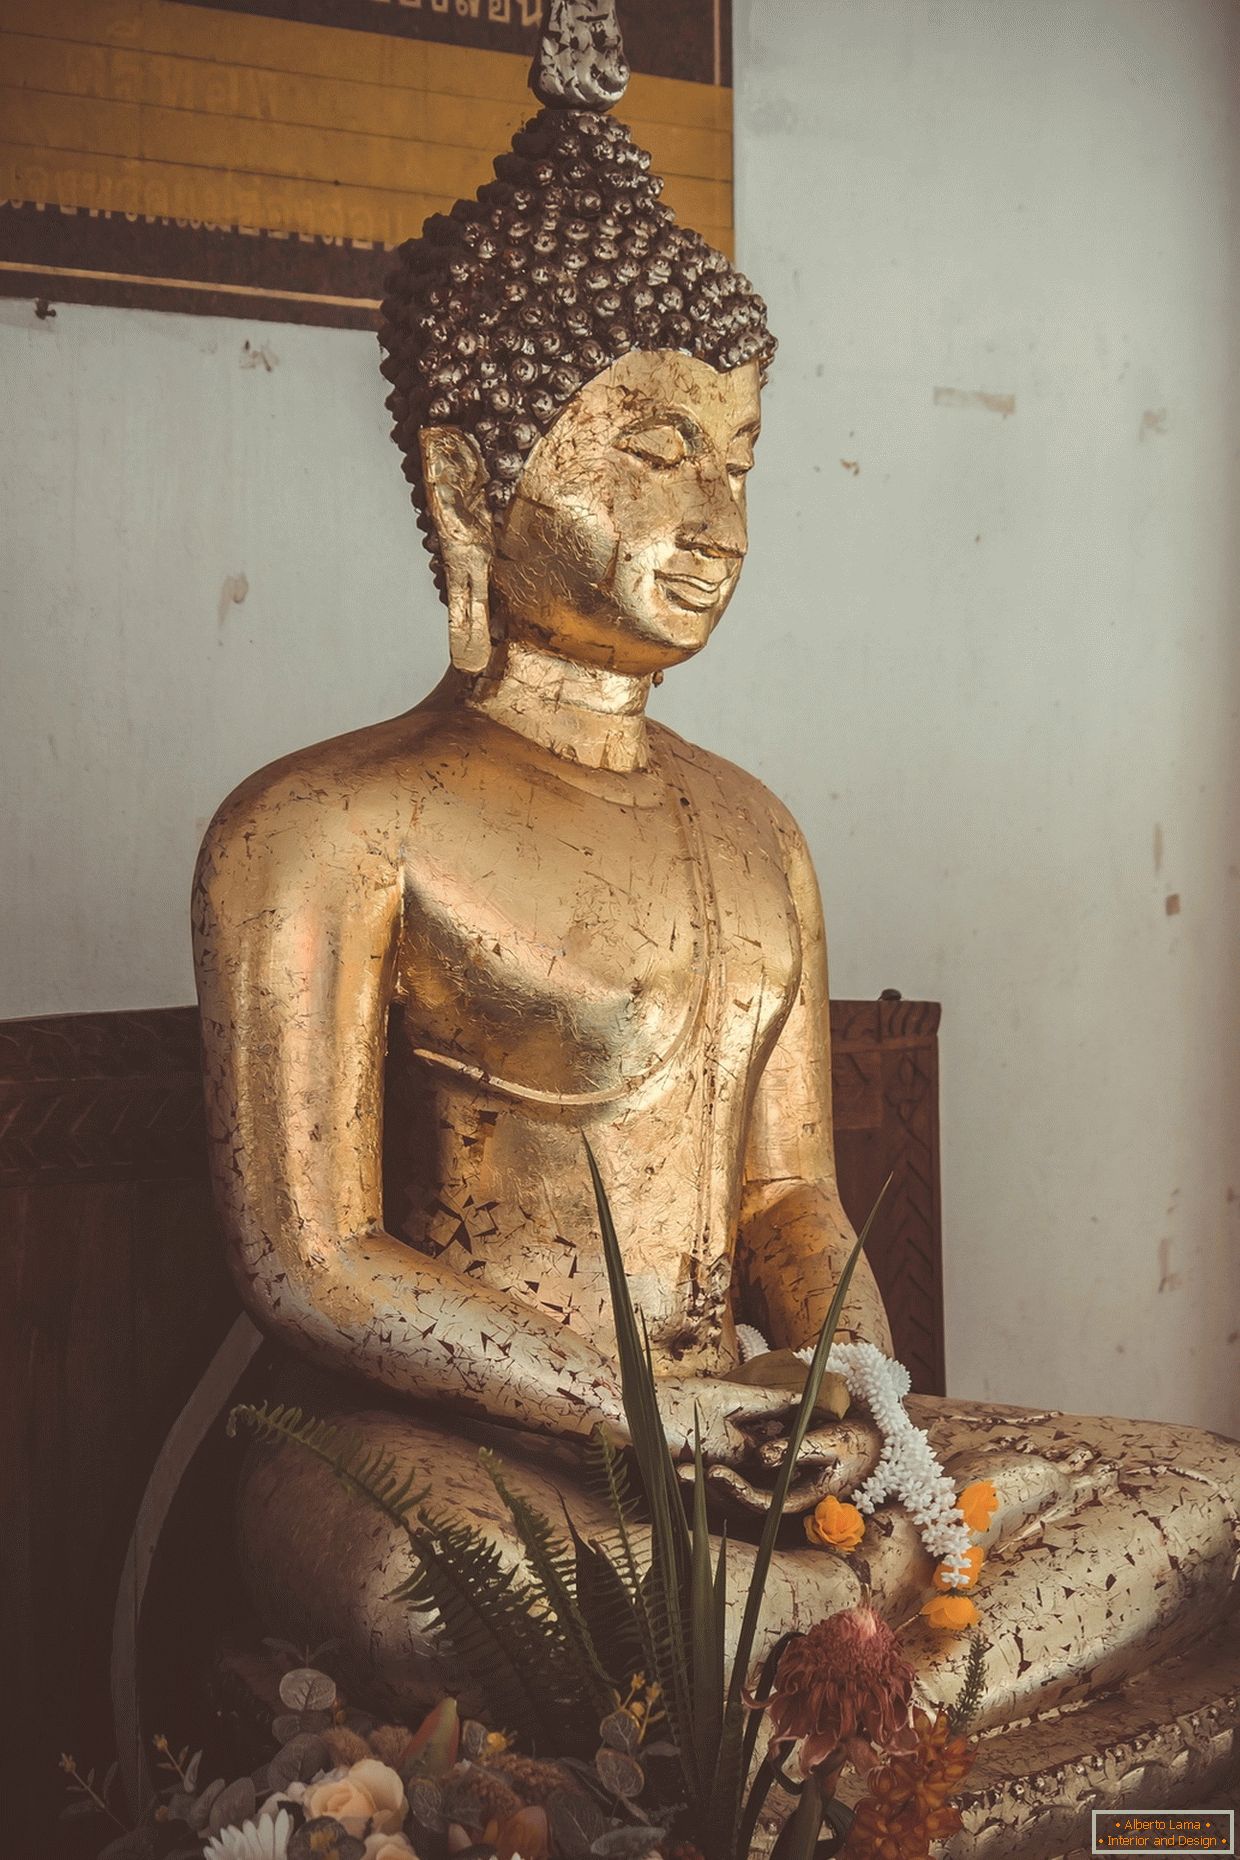 Zlatni Buda